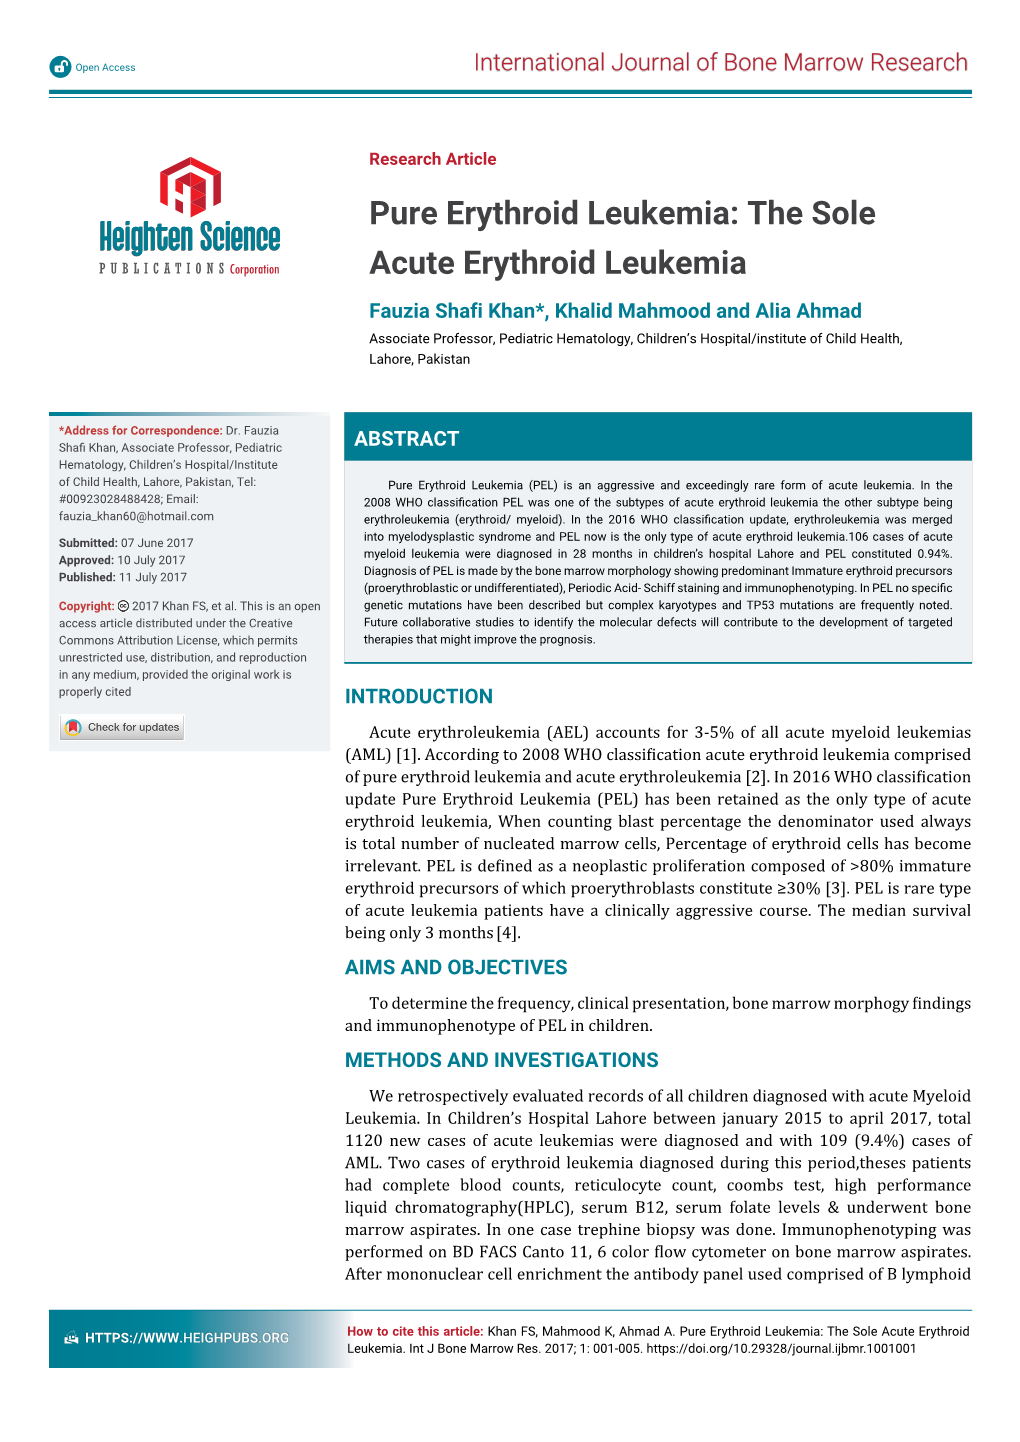 Pure Erythroid Leukemia: the Sole Acute Erythroid Leukemia